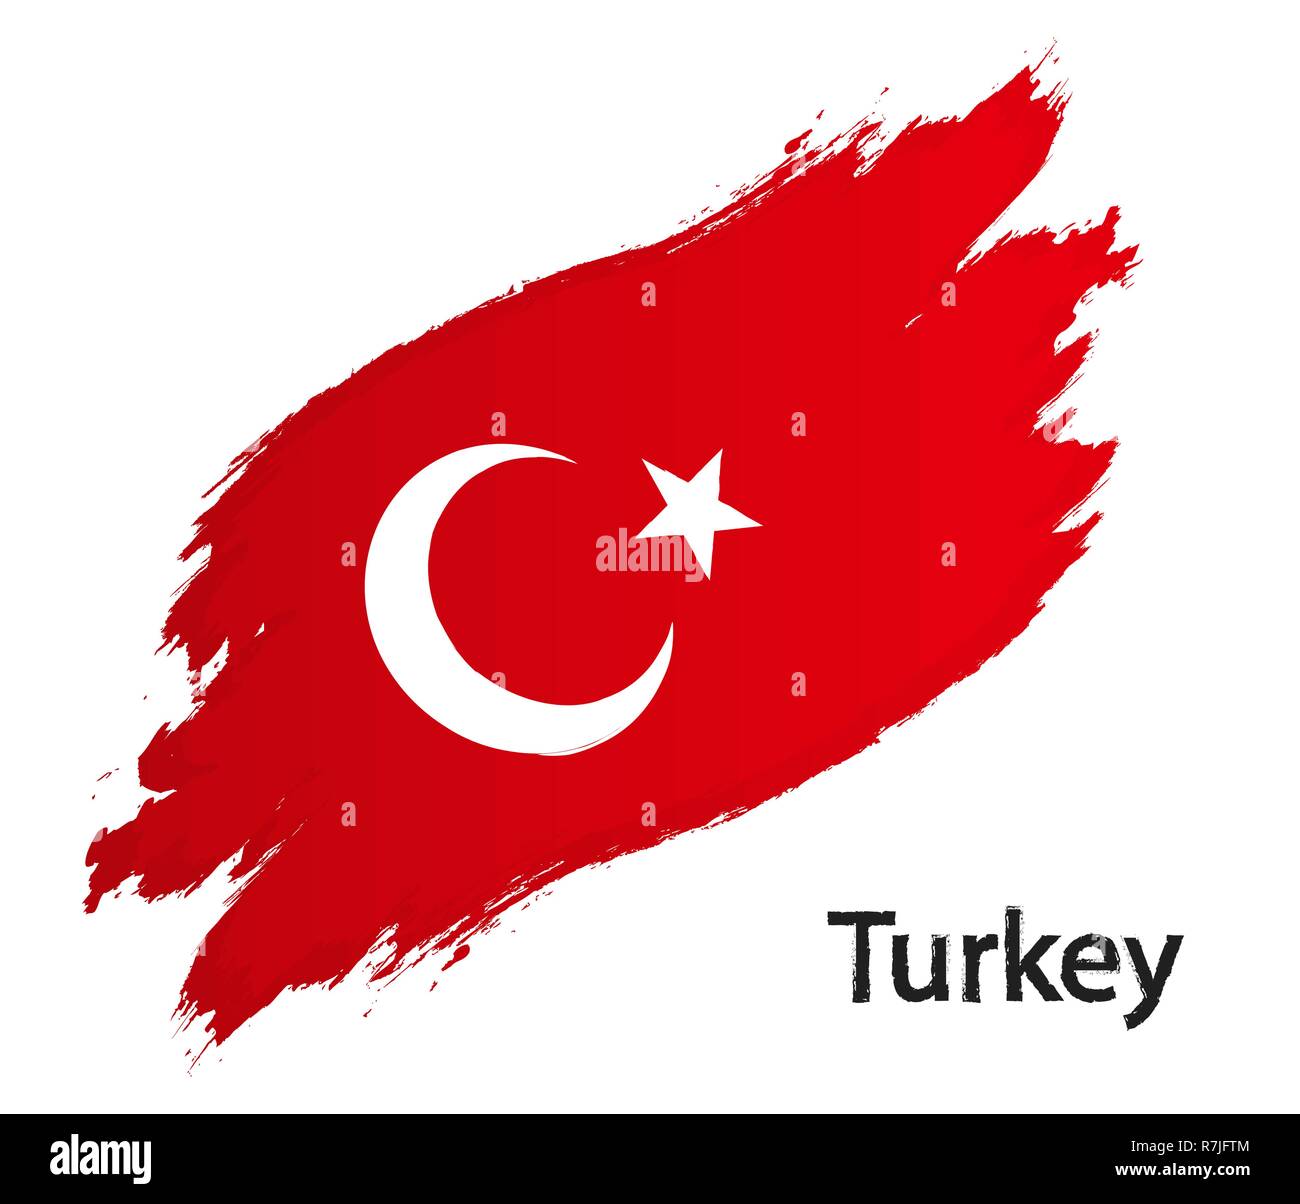 Flagge der Türkei grunge style Vector Illustration auf weißem Hintergrund Stock Vektor